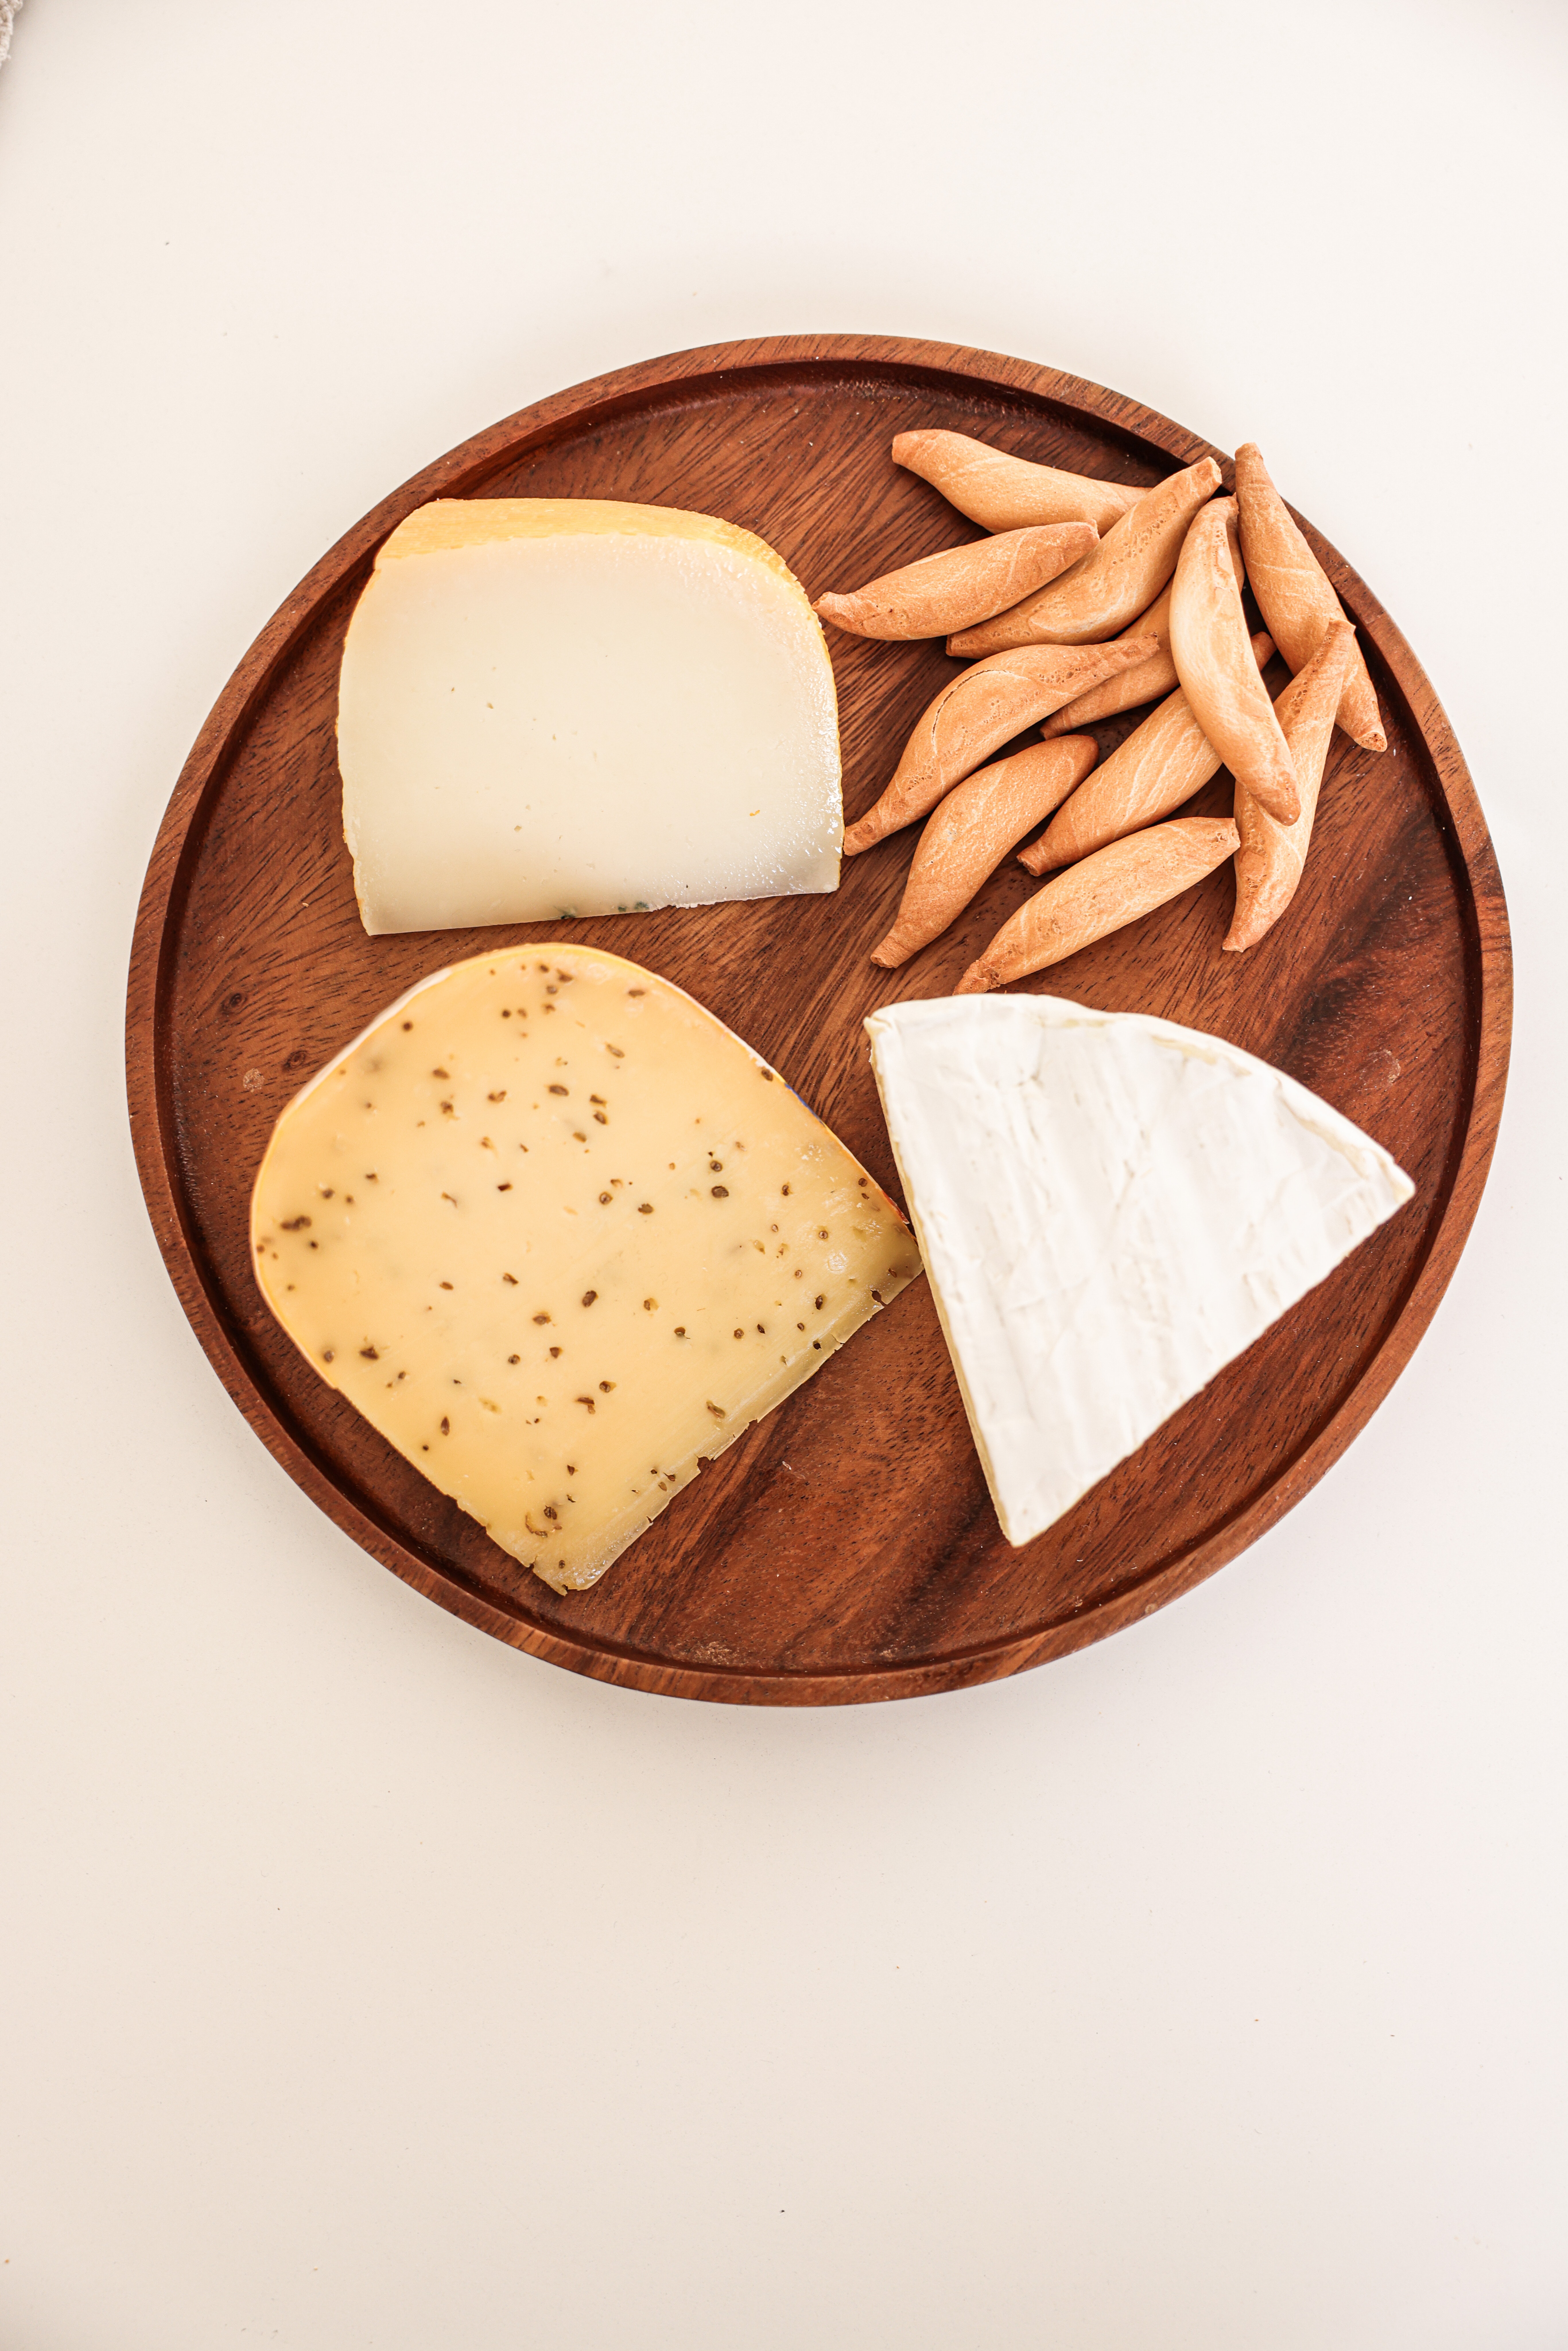 Plateau à fromage | Source : Pexels